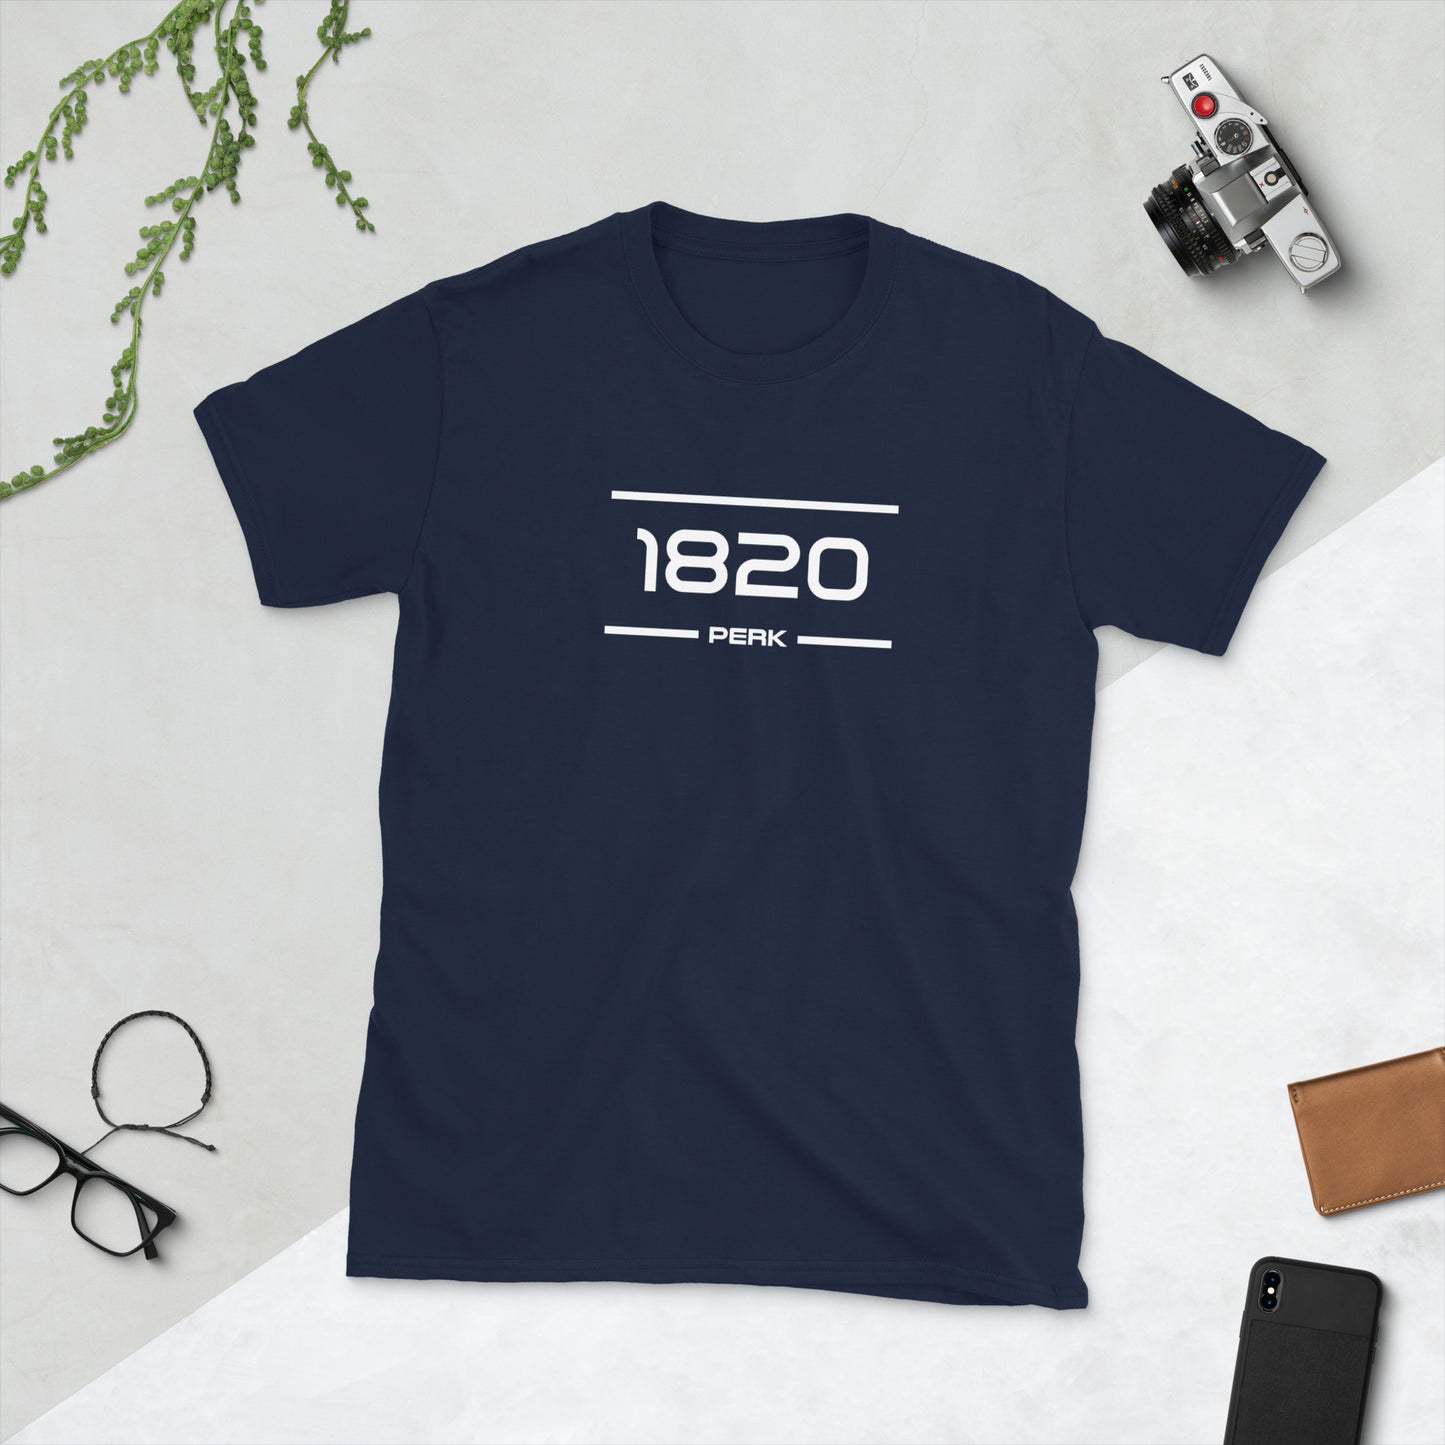 Tshirt - 1820 - Perk